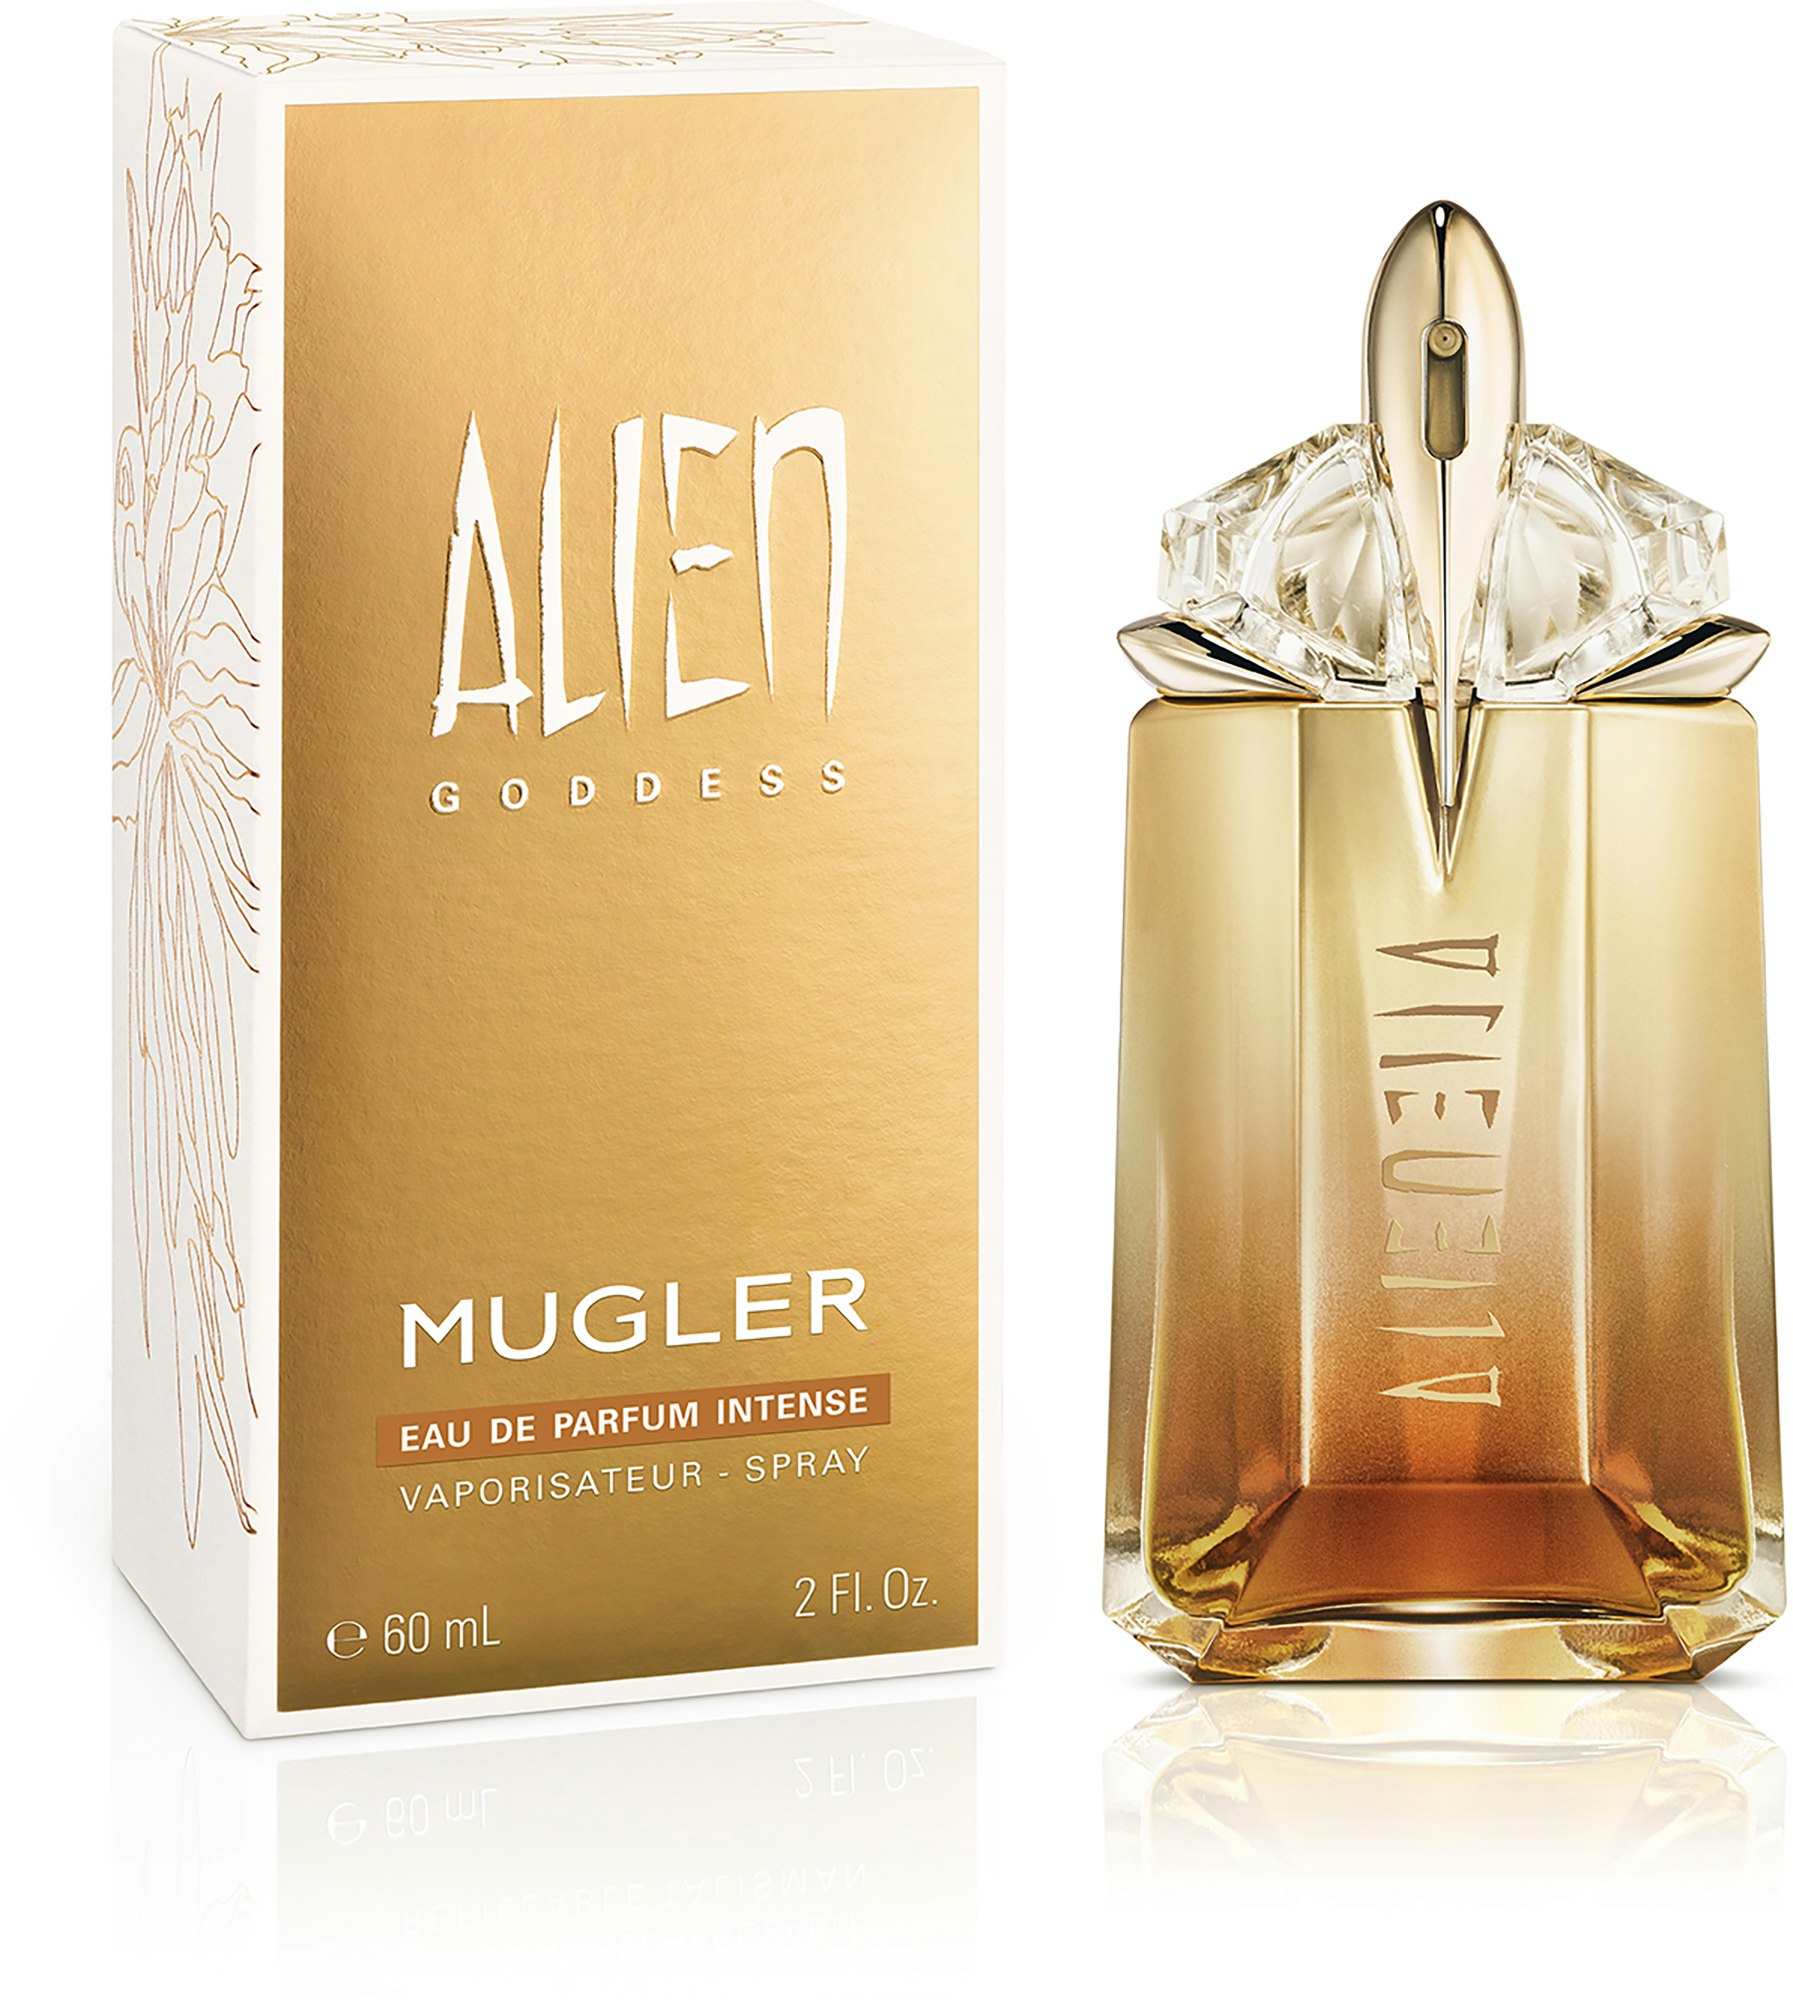 Mugler Alien Goddess Intense Eau de Parfum